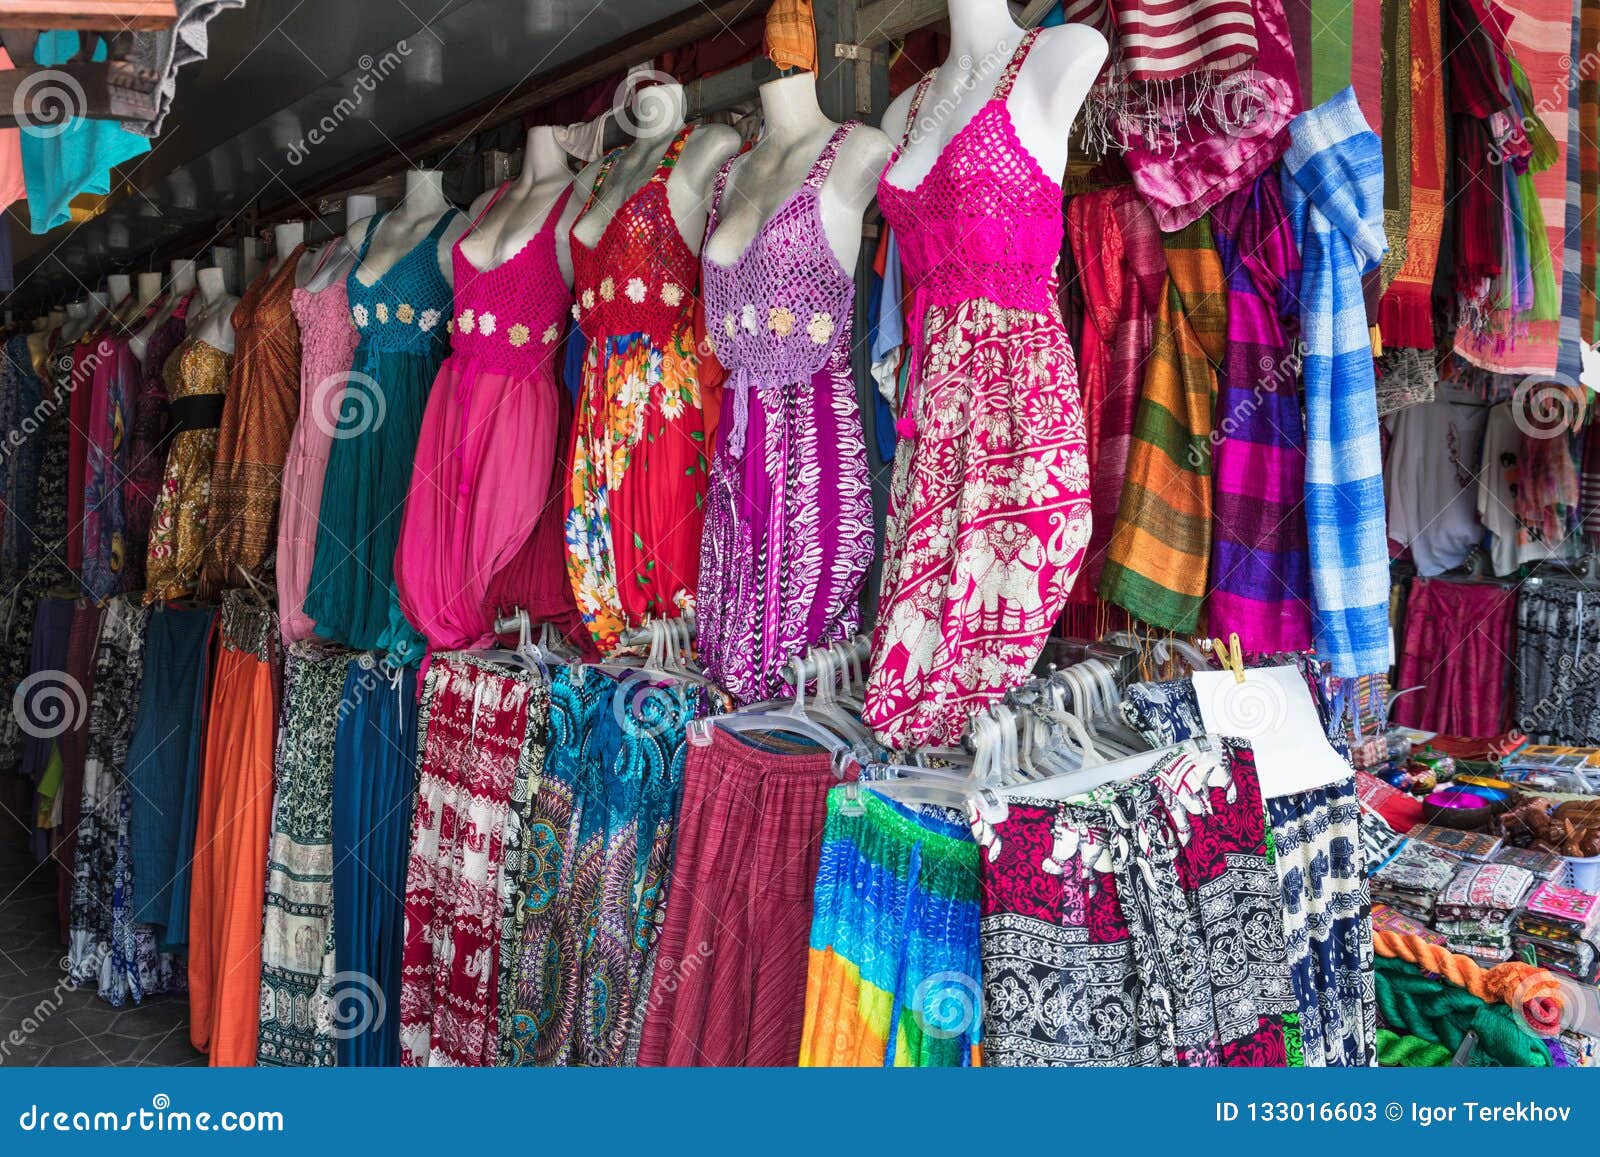 La Ropa De Las Mujeres En Un Mercado Callejero Imagen de archivo - Imagen  de manera, ropa: 133016603